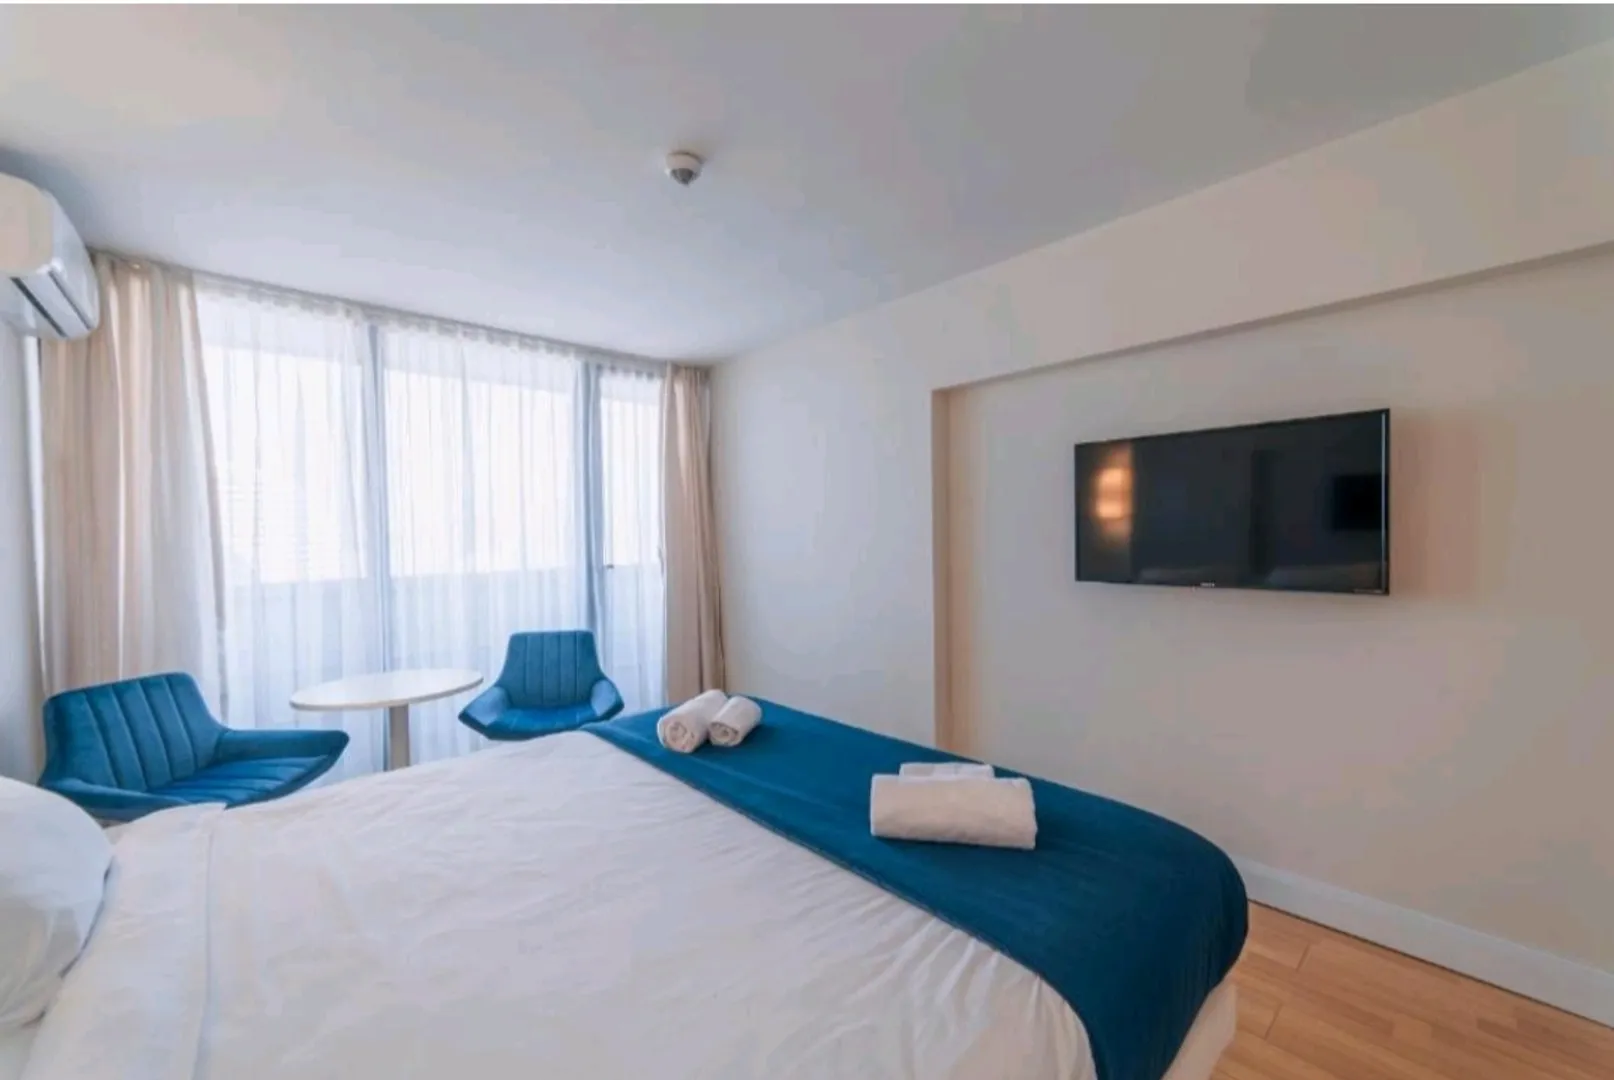 Современный плоский телевизор напротив кровати в нише стены апартаментов является очень актуальным для комфортного отдыха и времяпровождения.